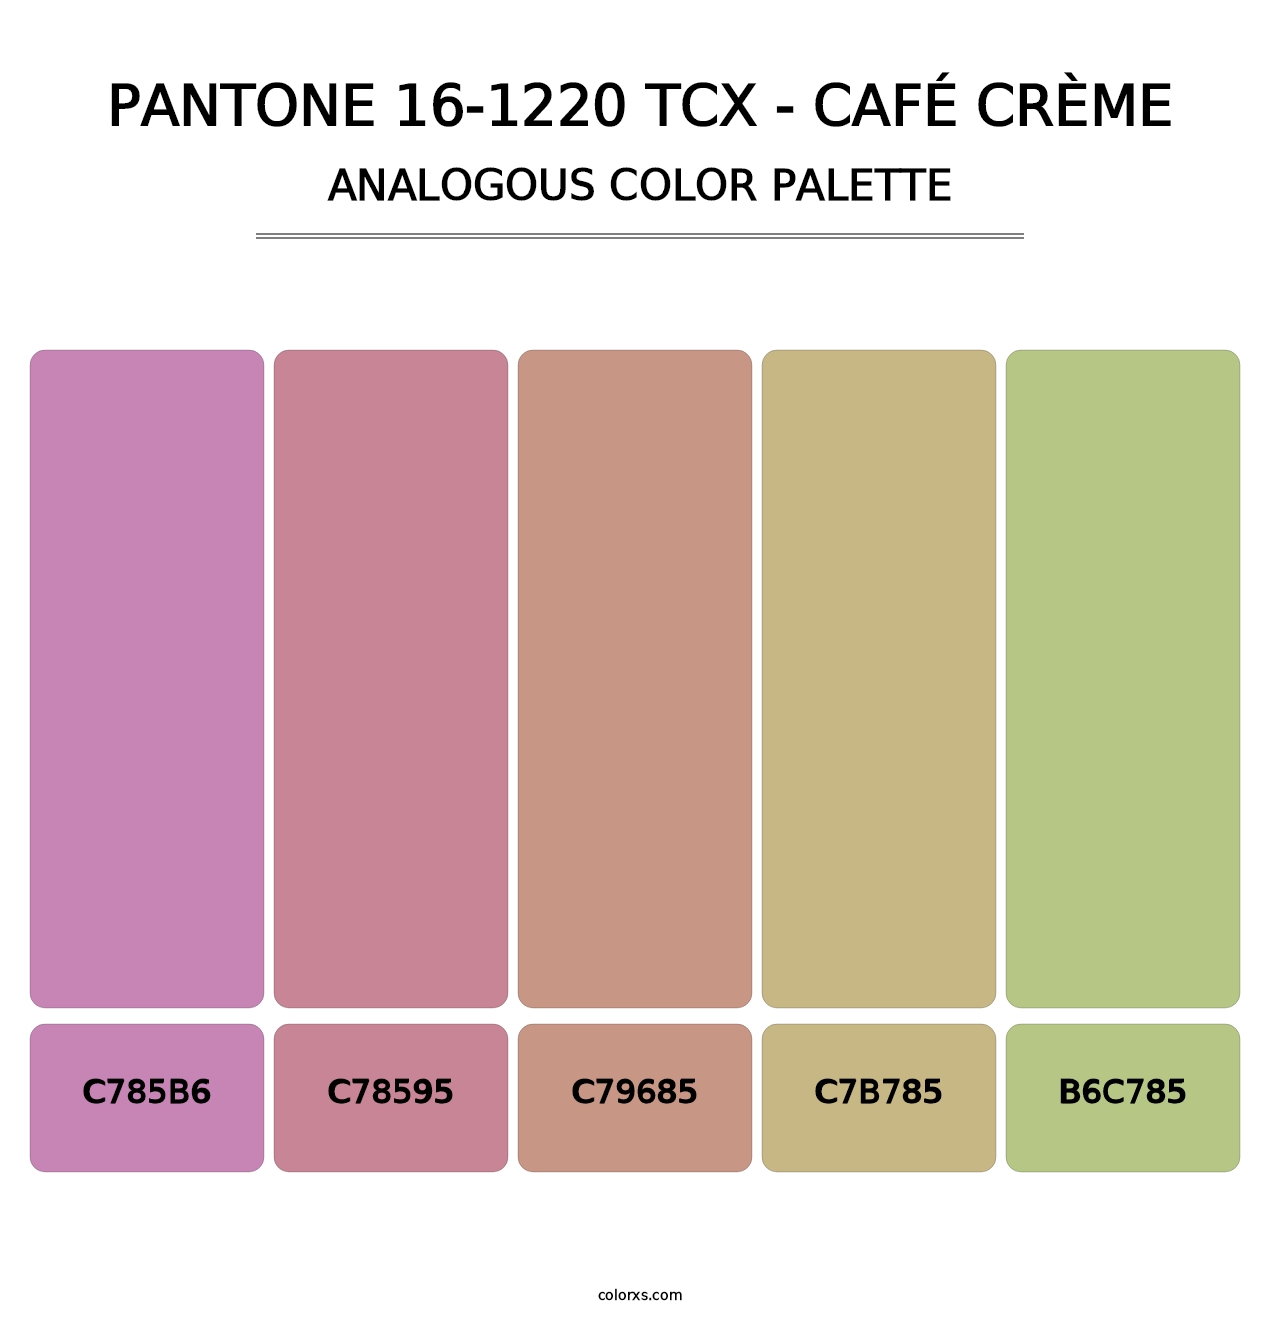 PANTONE 16-1220 TCX - Café Crème - Analogous Color Palette